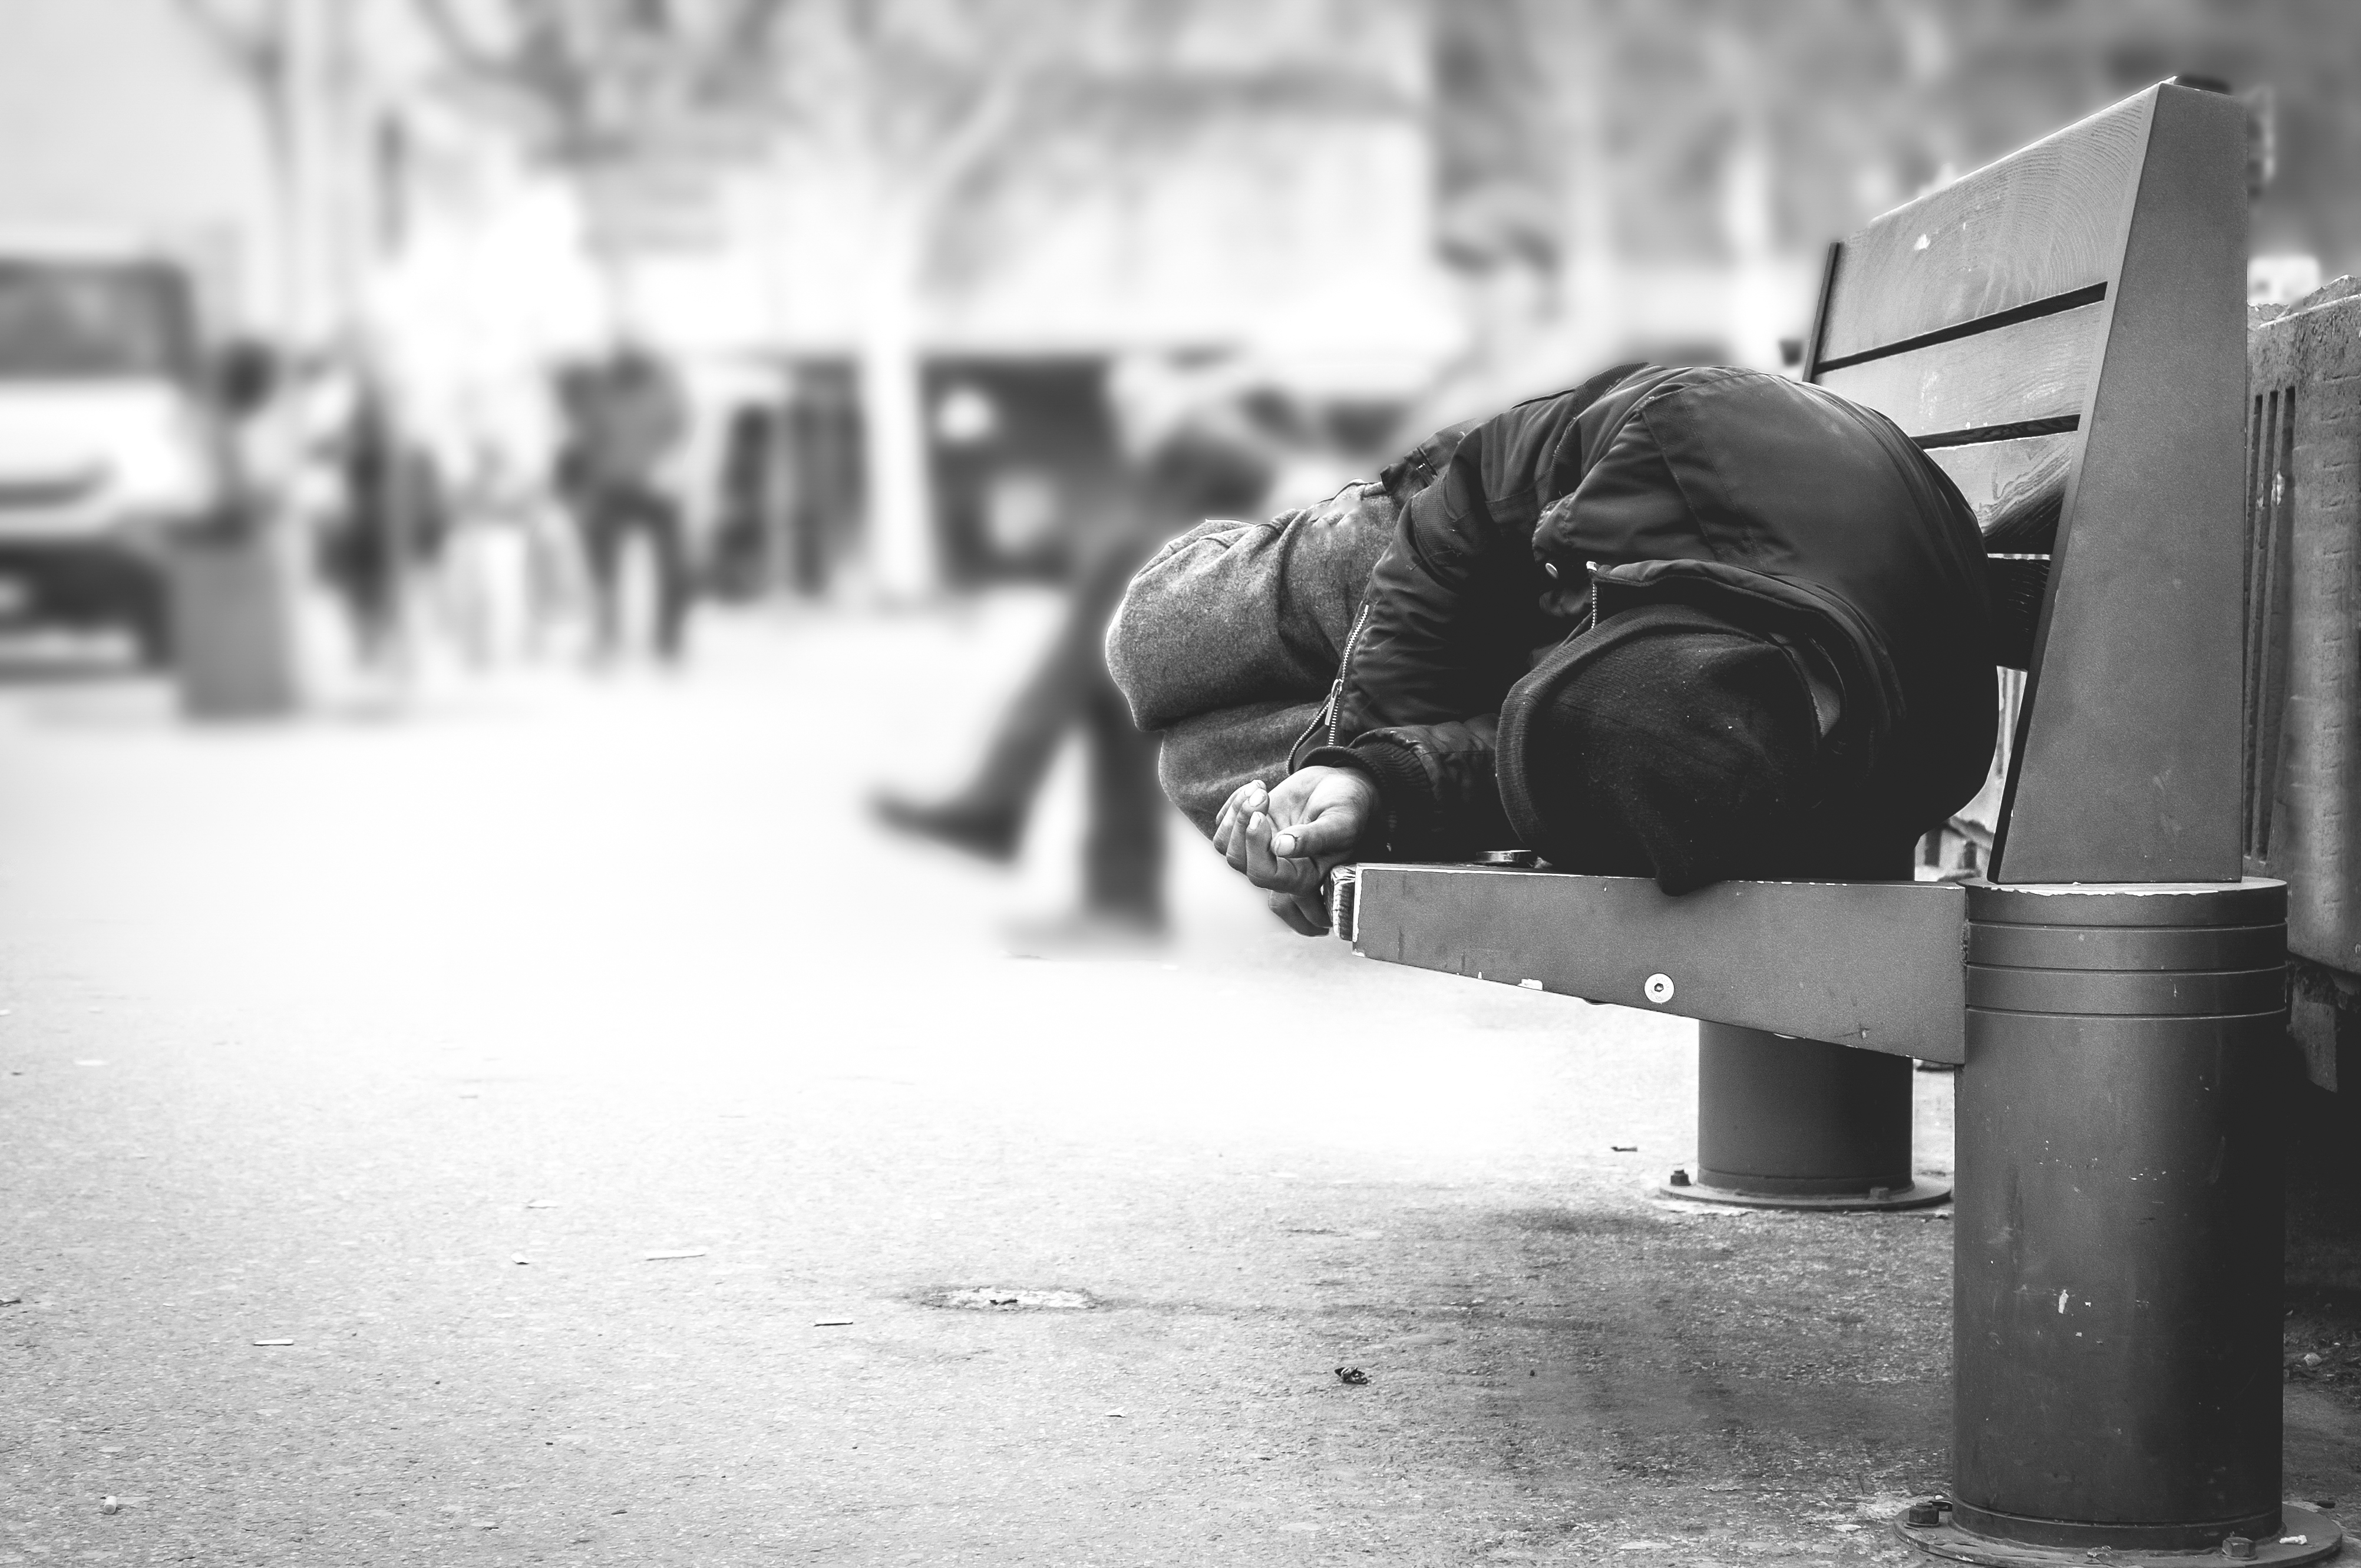 Ein von Armut betroffener, wohnungsloser Mann schläft auf einer Bank